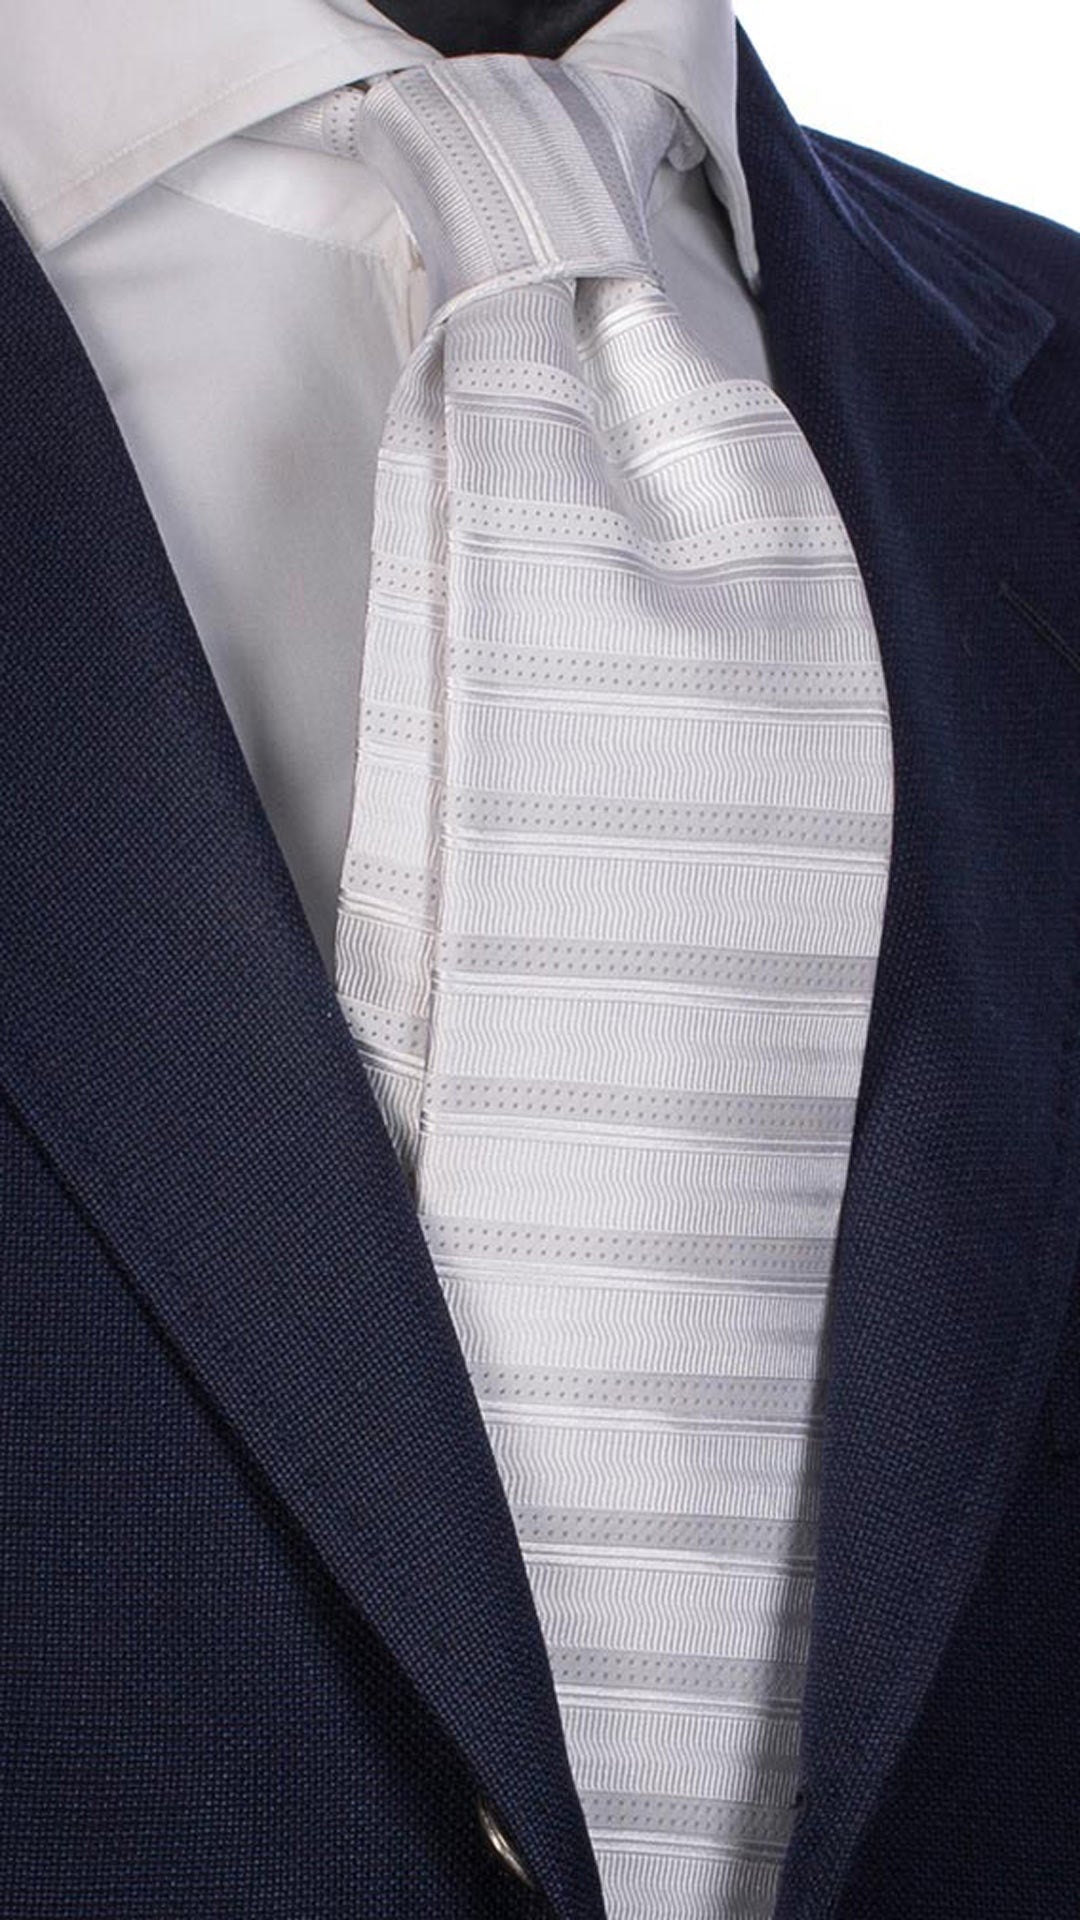 Cravatta da Cerimonia di Seta Bianca Righe Orizzontali Tono su Tono Grigio CY2294 Made in Italy Graffeo Cravatte